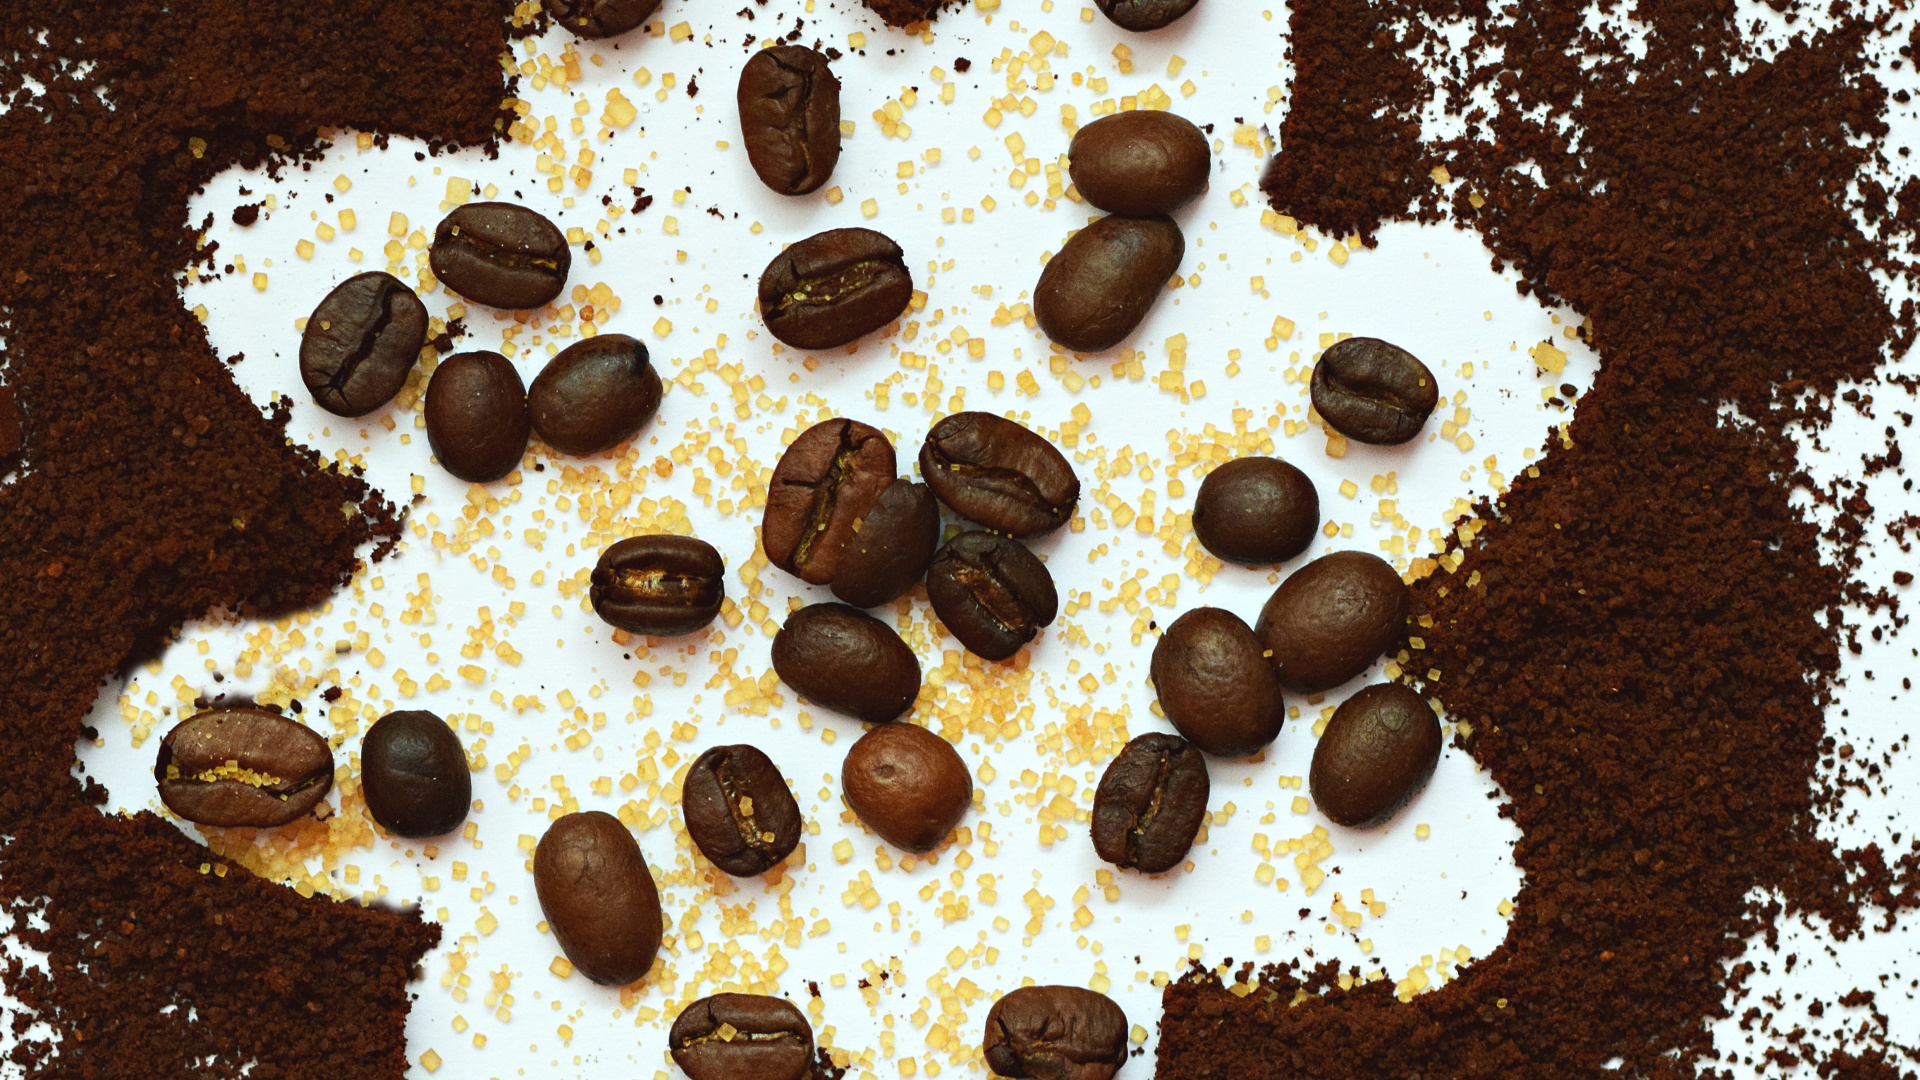 咖啡豆, 食品, 巧克力, 甜点, 巧克力芯片 壁纸 1920x1080 允许